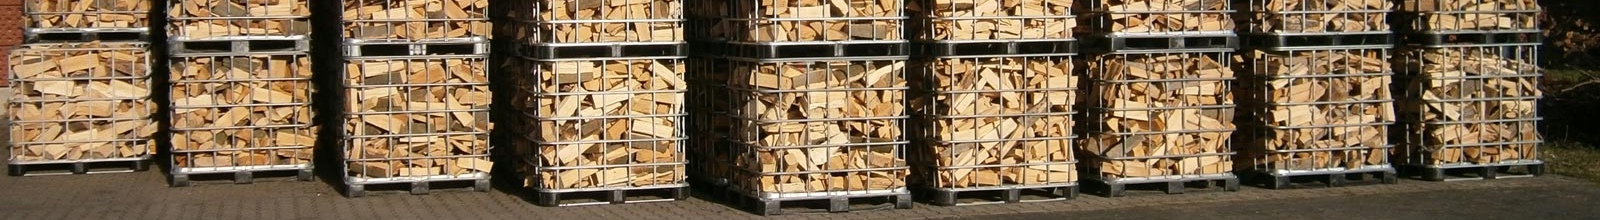 Mehrere Gitter-Container mit Holzscheiten